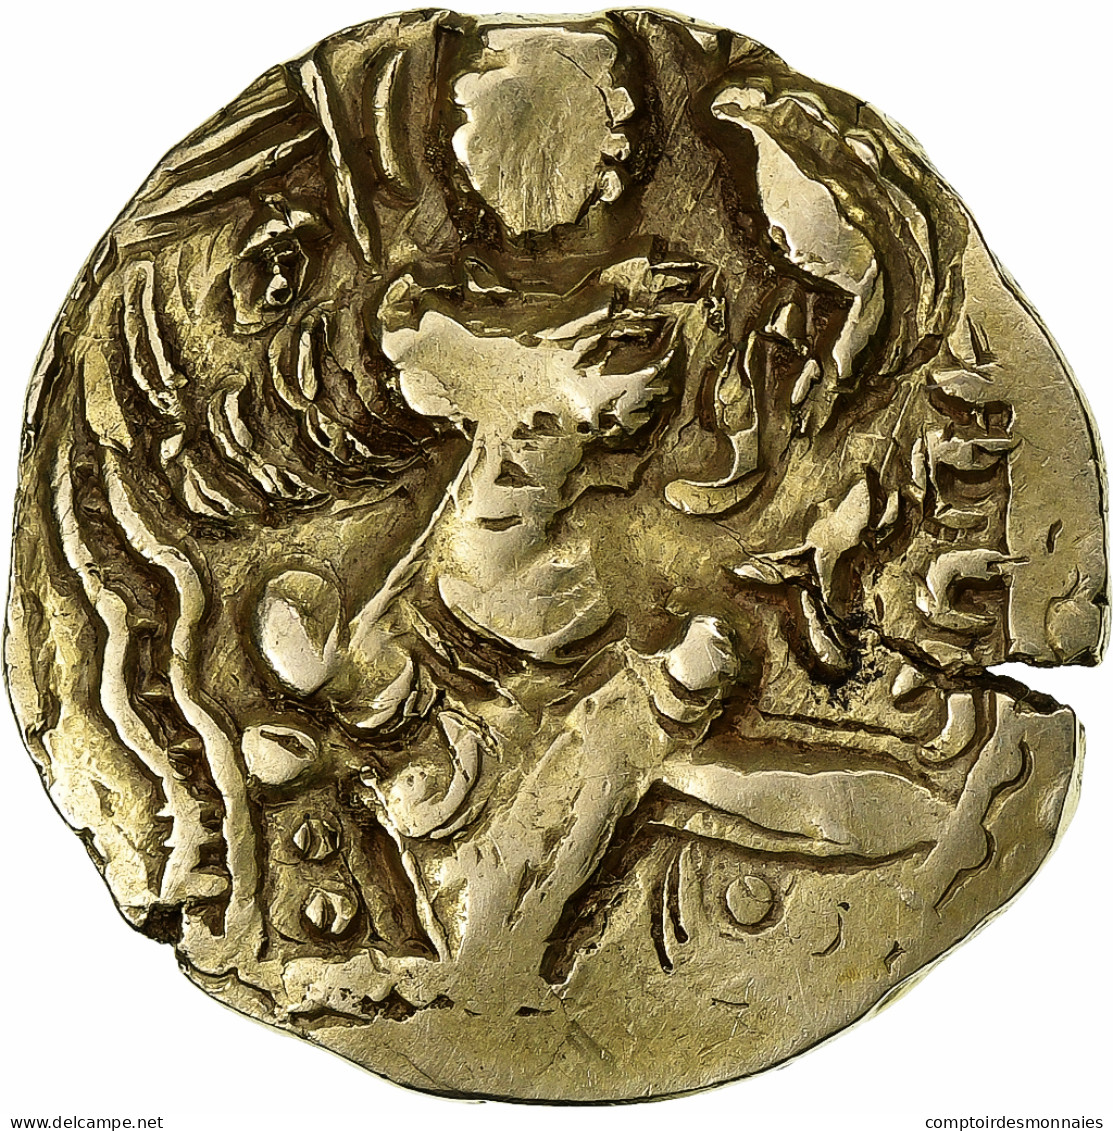 Kidarites, Kidara, Dinar, Ca. 335-345, Electrum, TB+ - Orientales